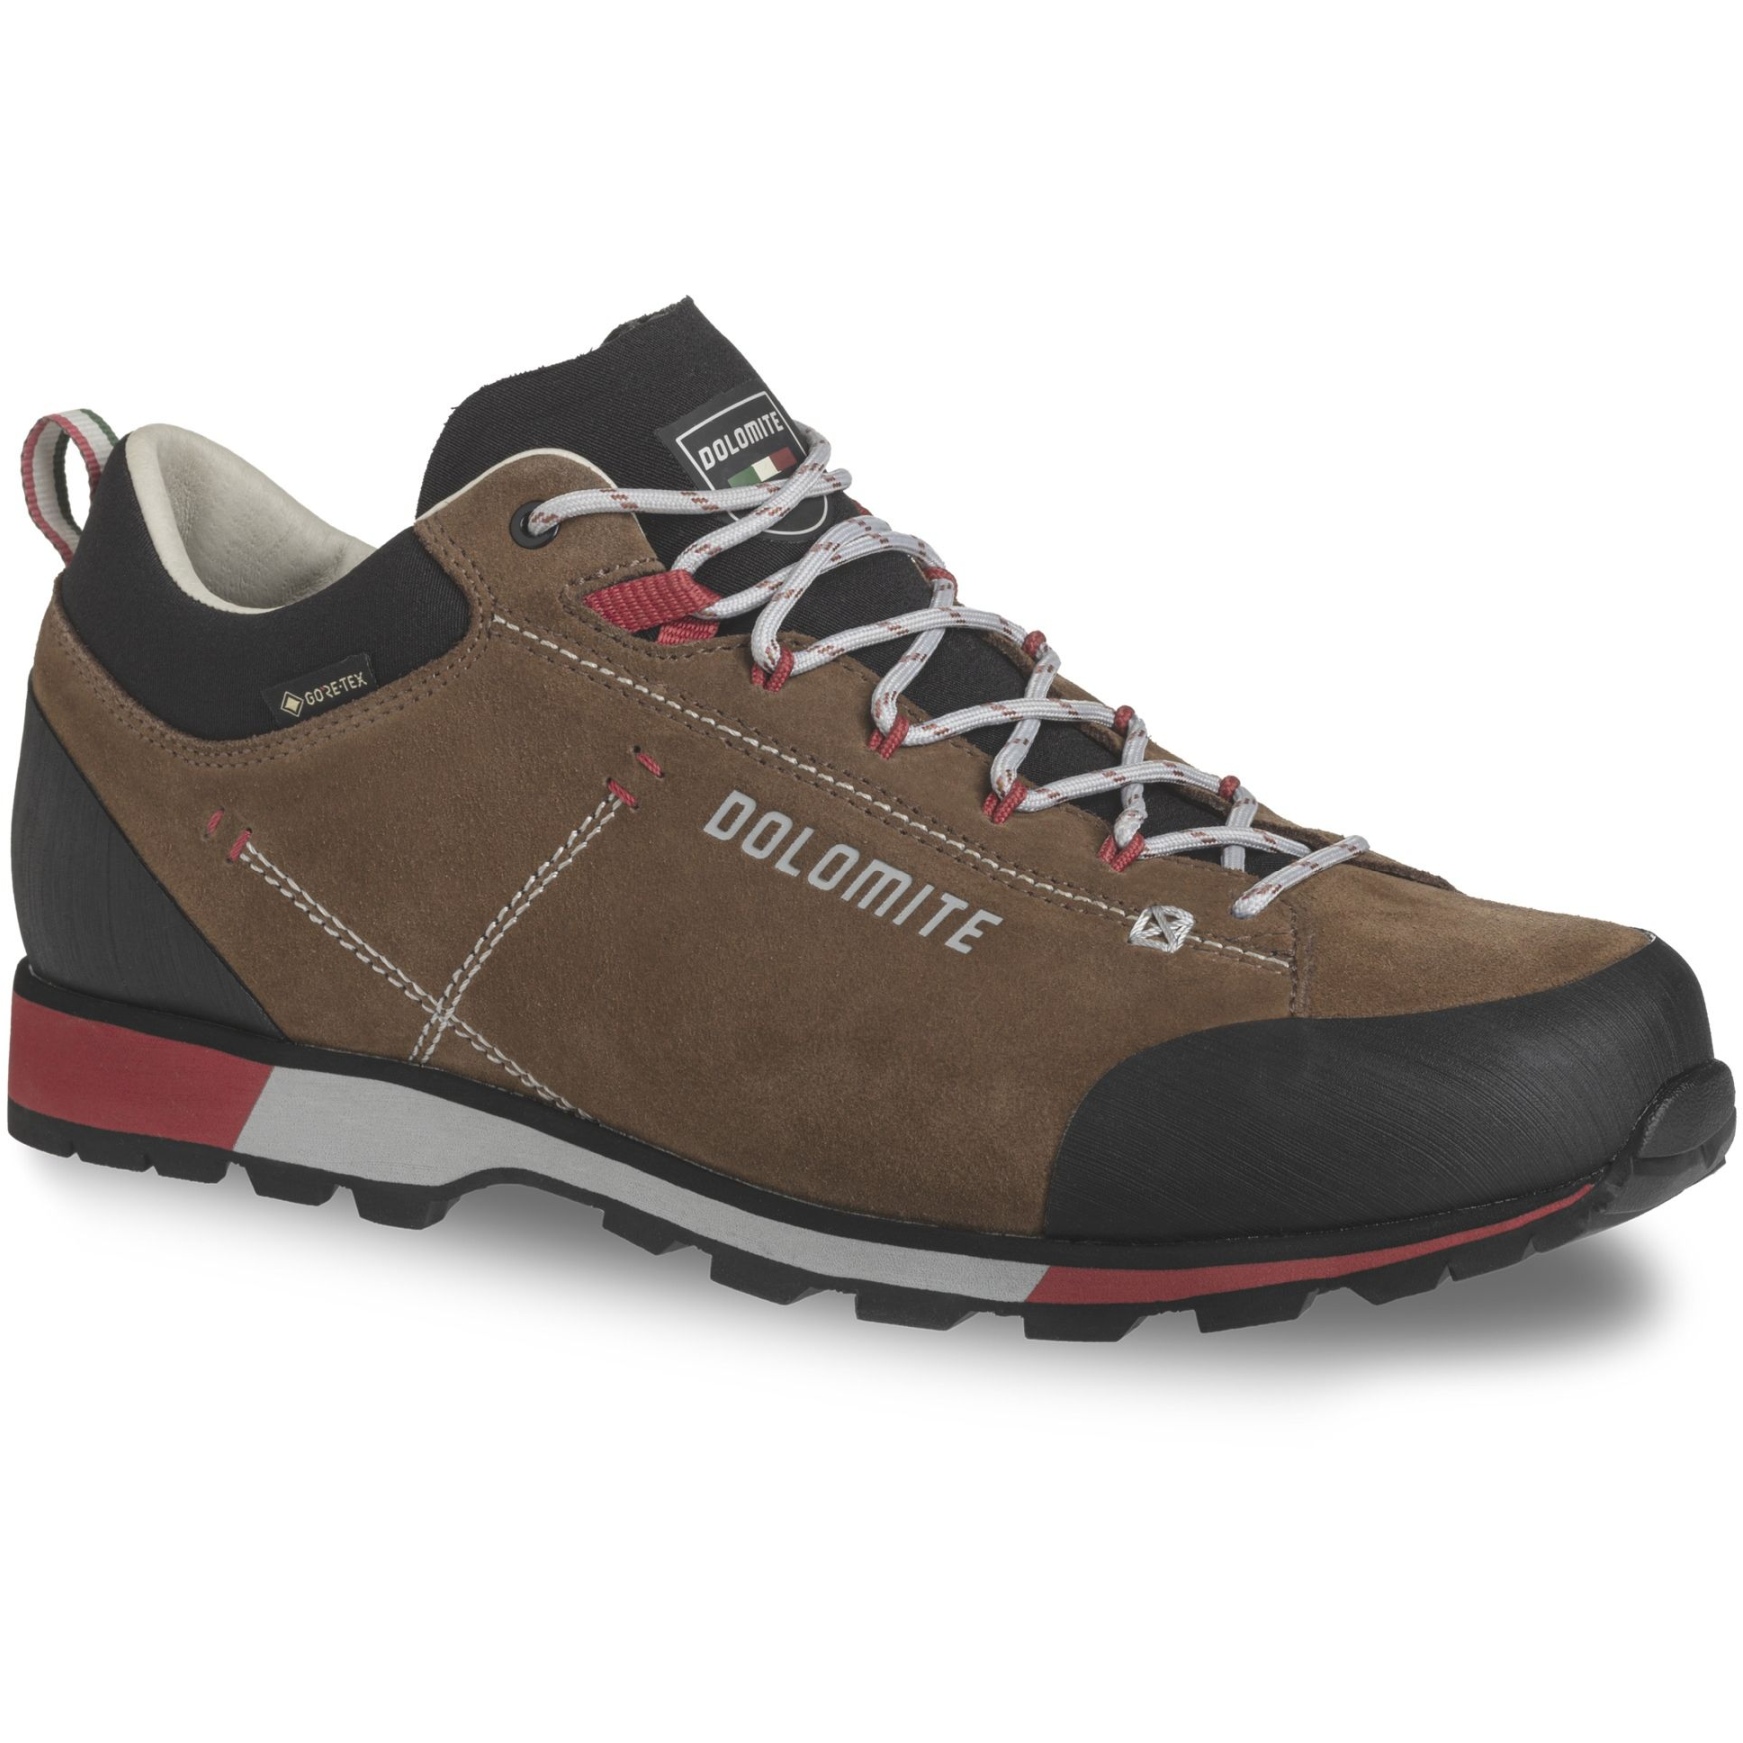 Produktbild von Dolomite 54 Hike Low Evo GORE-TEX Schuhe Herren - bronze brown